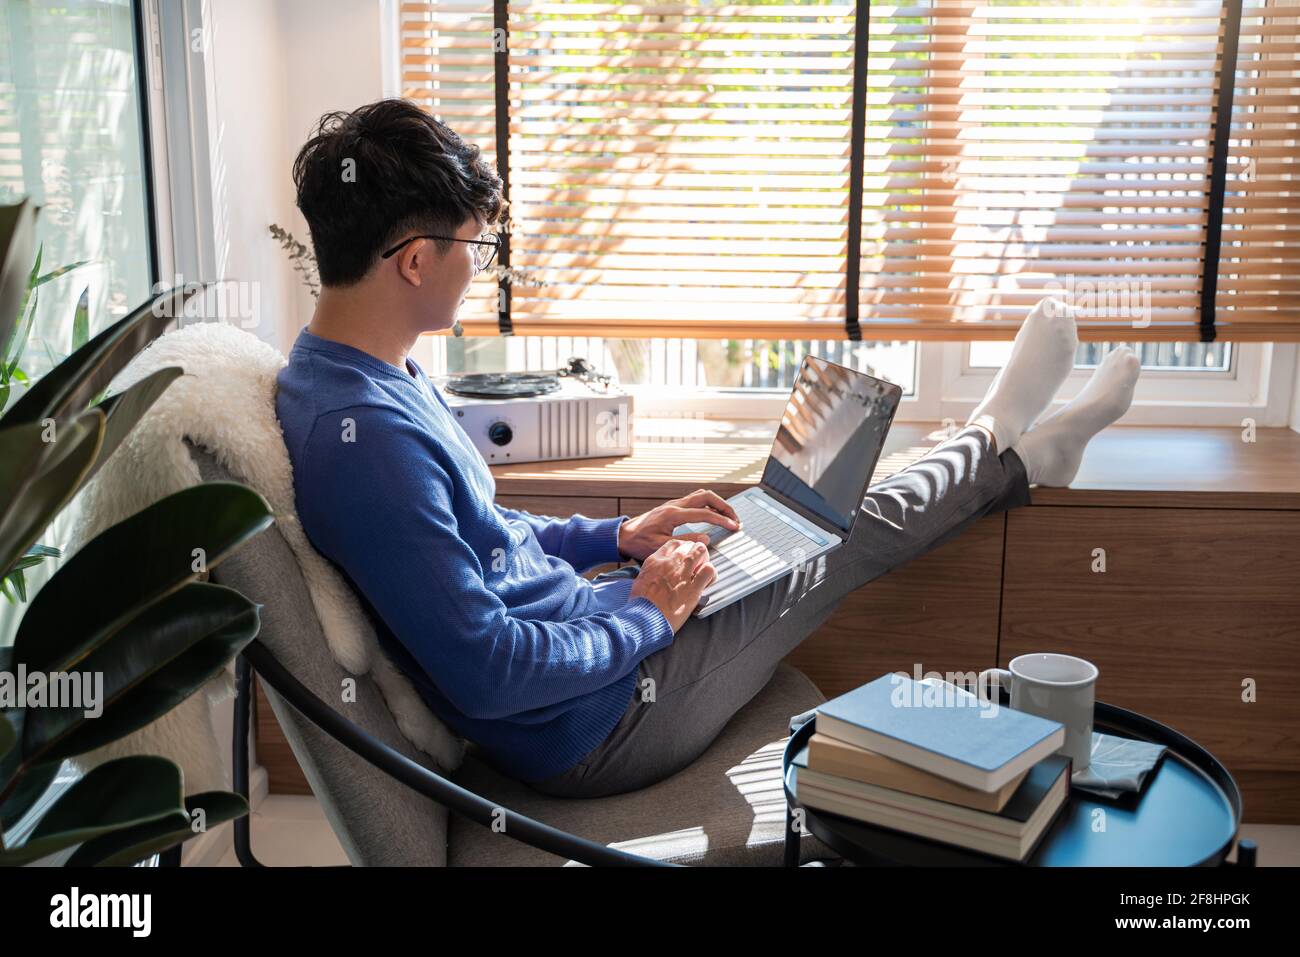 Jeune homme asiatique de technologie se détendant tenant un ordinateur portable et regardant l'écran dans le salon, travail à distance ou le concept de travail à domicile Banque D'Images